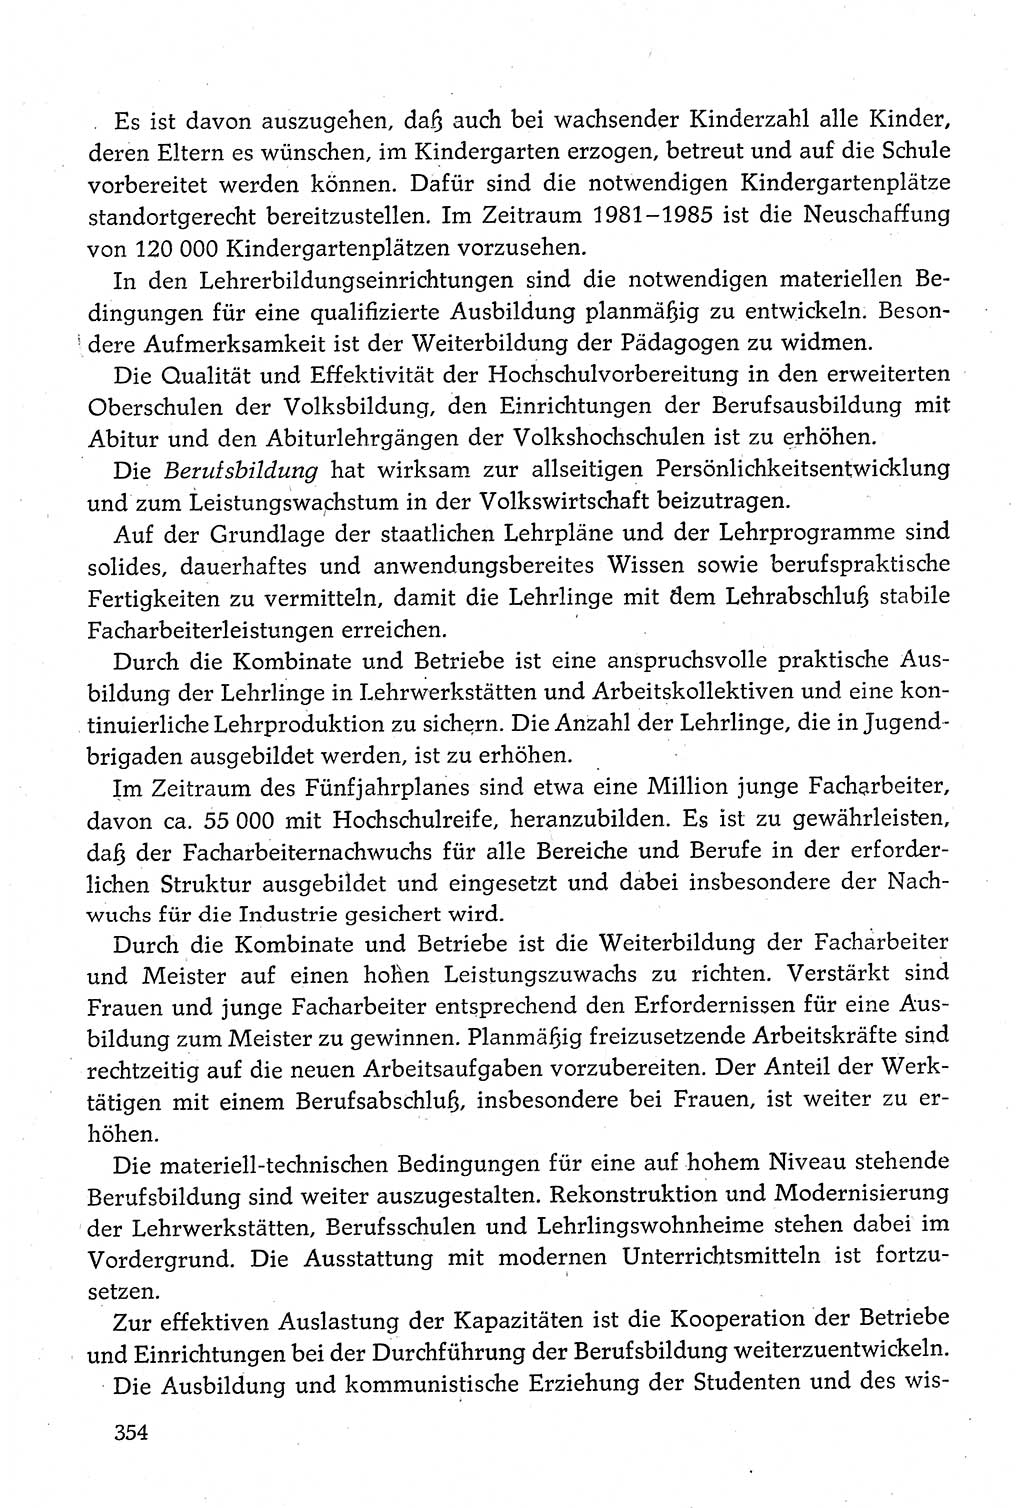 Dokumente der Sozialistischen Einheitspartei Deutschlands (SED) [Deutsche Demokratische Republik (DDR)] 1980-1981, Seite 354 (Dok. SED DDR 1980-1981, S. 354)